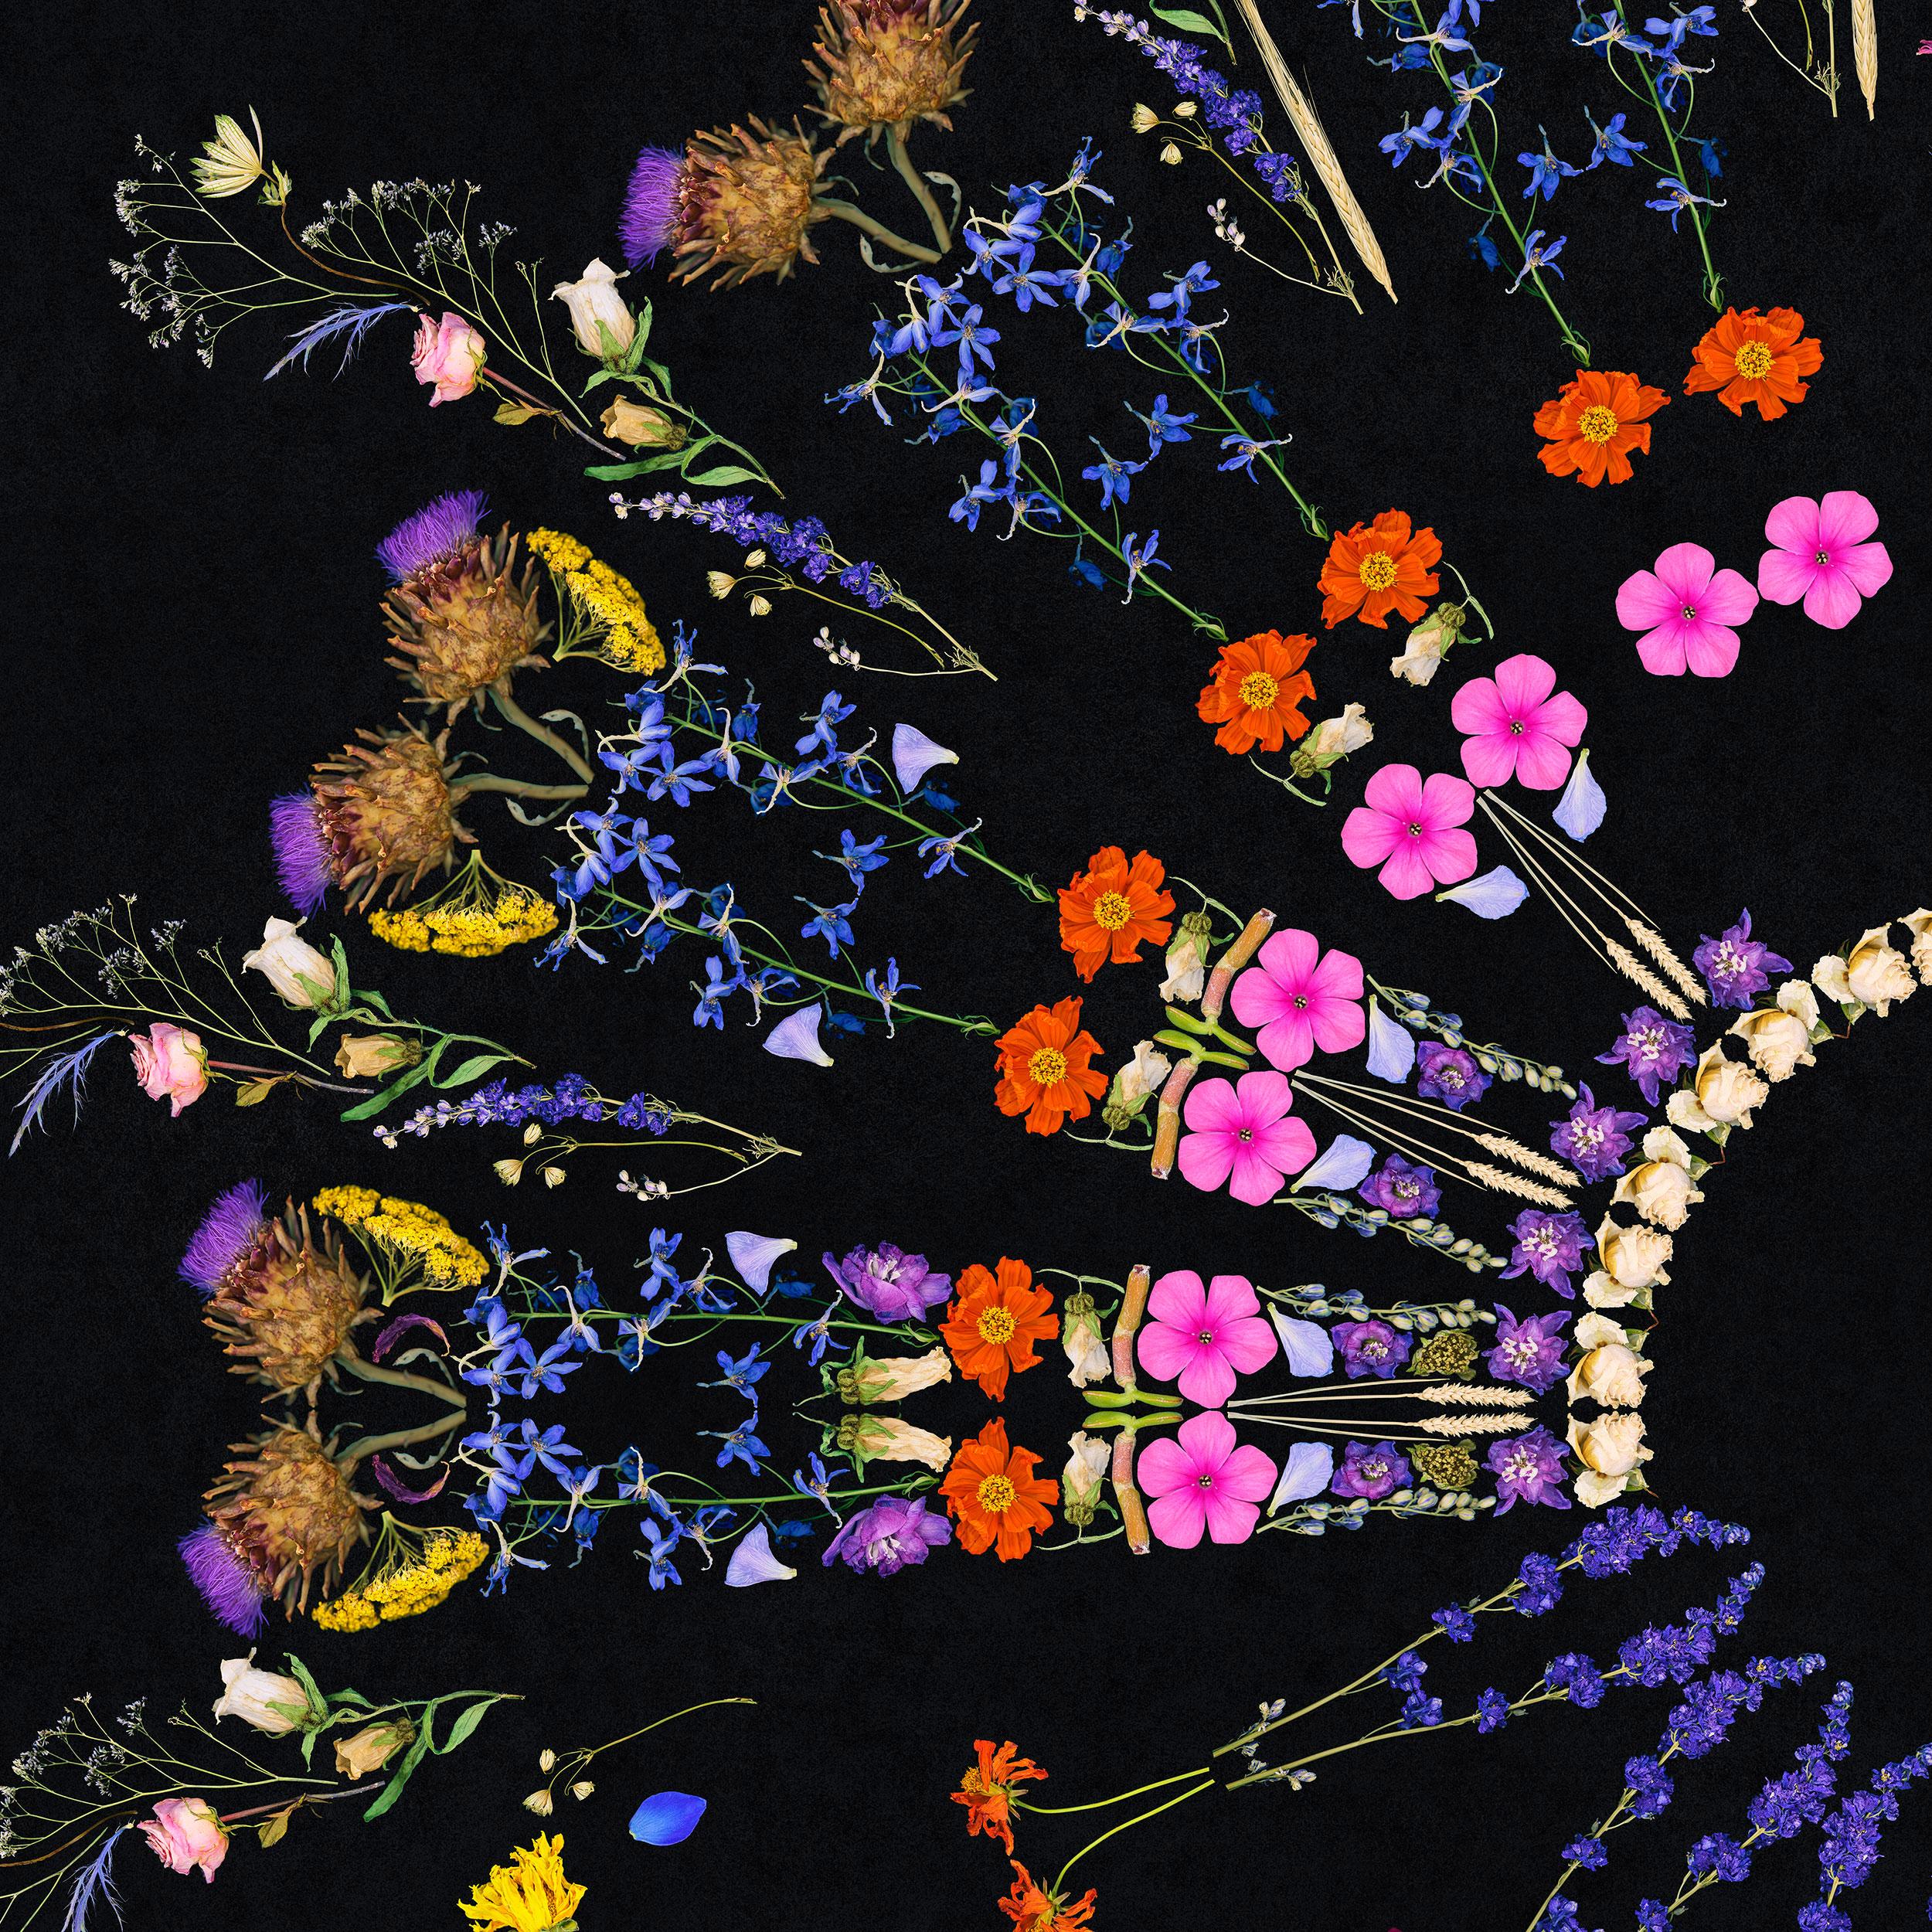 Florist Mandala - collage de fleurs mortes - Photograph de George McLeod